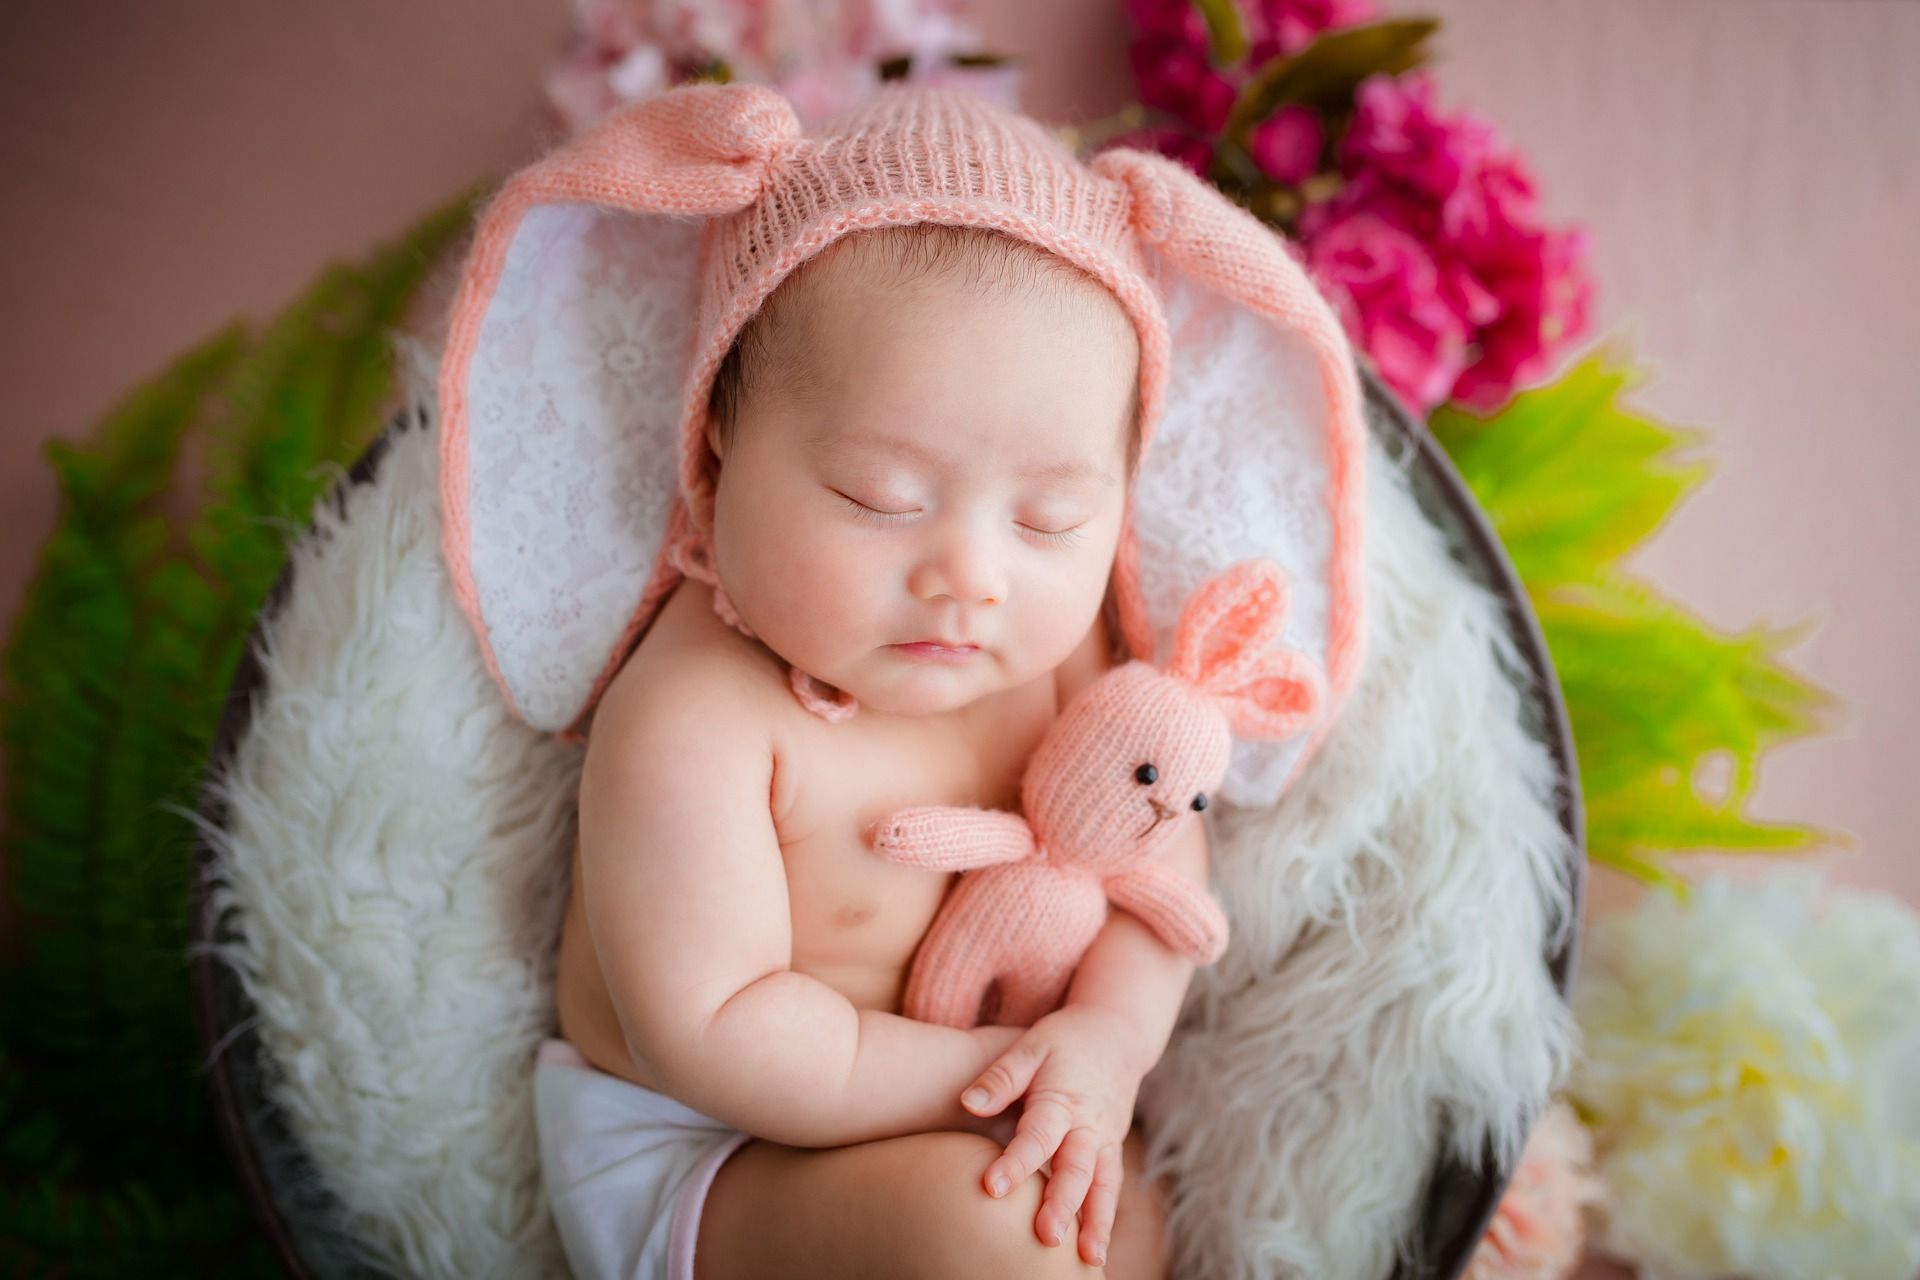 Ilustrasi jiwa manusia pada mulanya bersih seperti bayi baru lahir (sumber : pixabay.com)